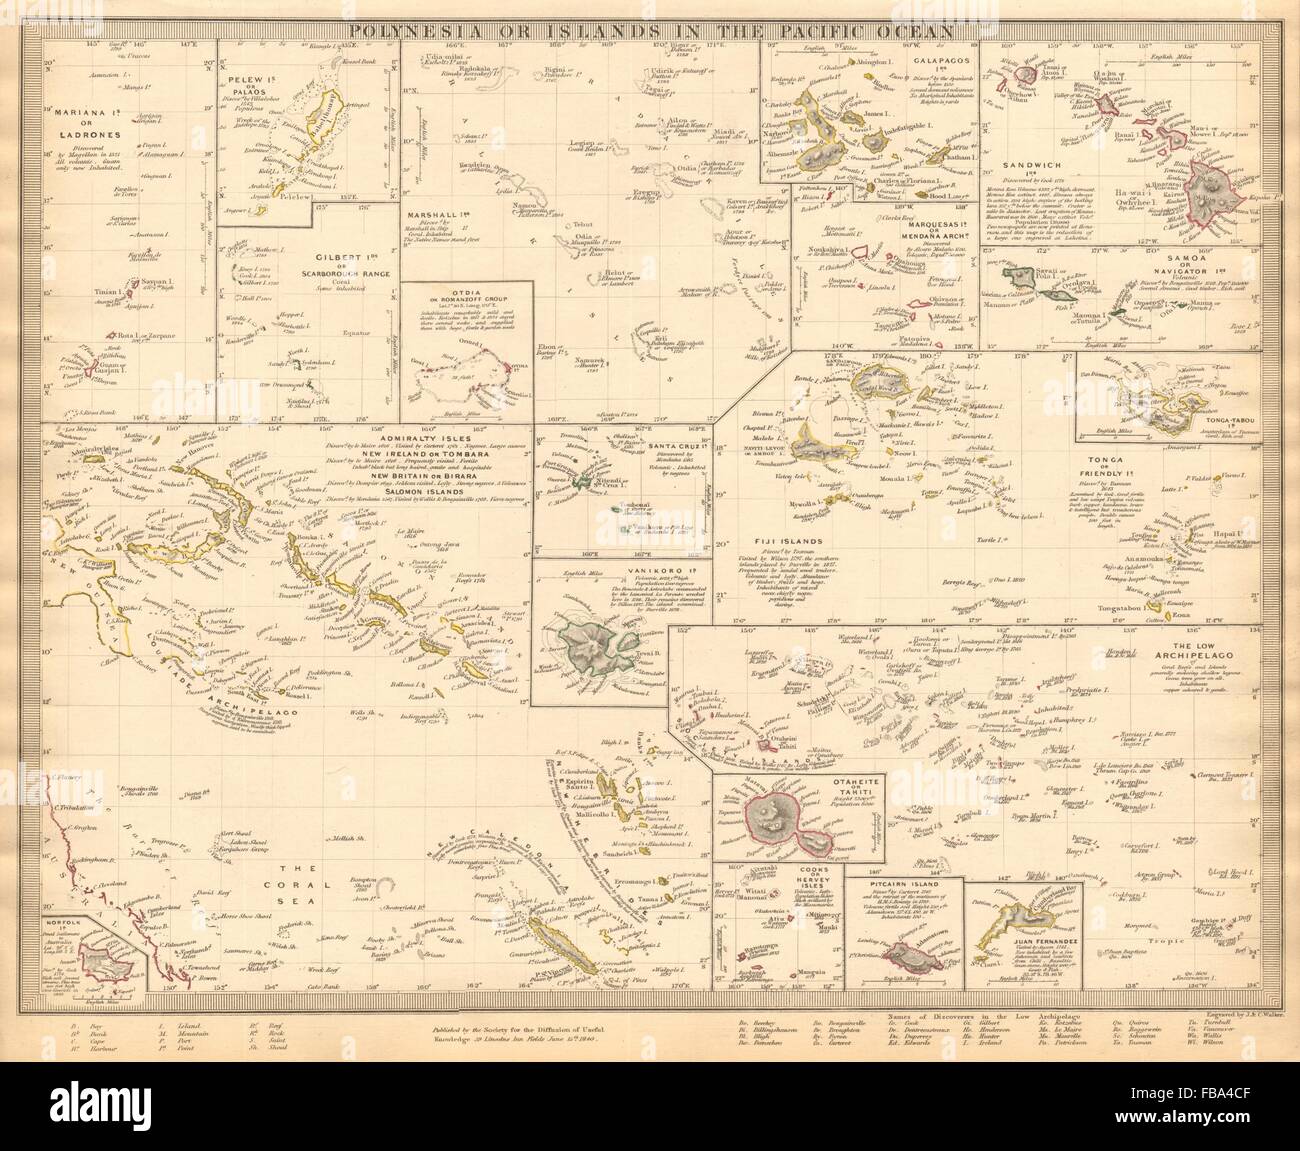 Islas del Pacífico. Hawaii polinesia Samoa, Fiji, Tonga, Tahití Cook. SDUK, 1844 mapa Foto de stock